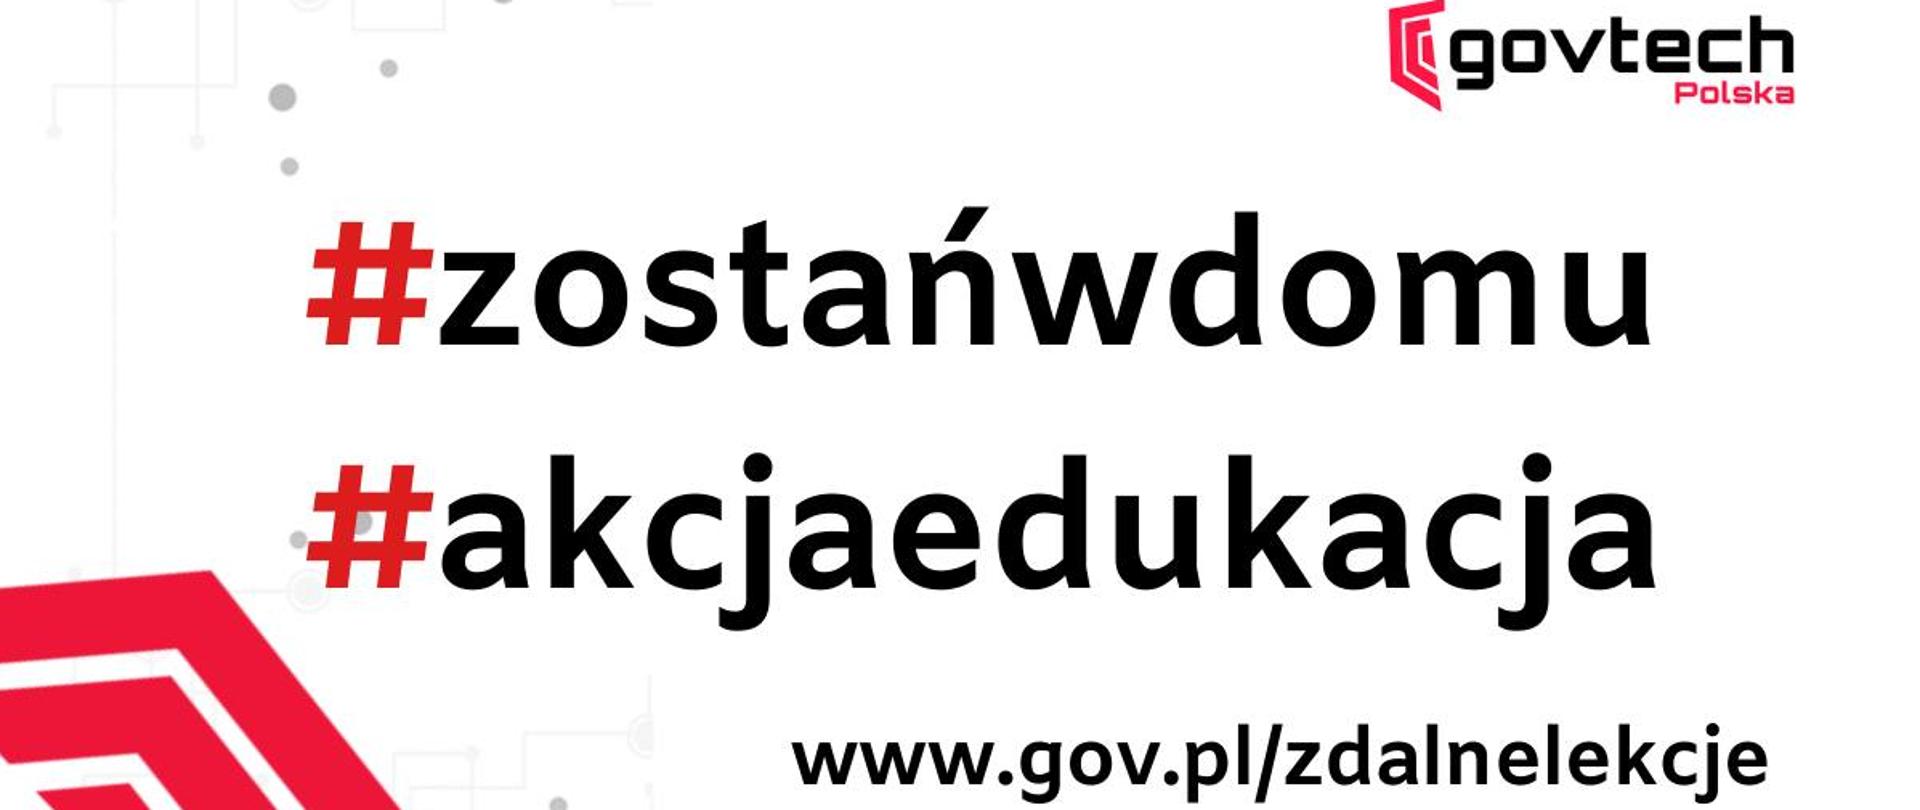 govtech Polska #zostańwdomu #akcjaedukacja www.gov.pl/zdalnelekcje